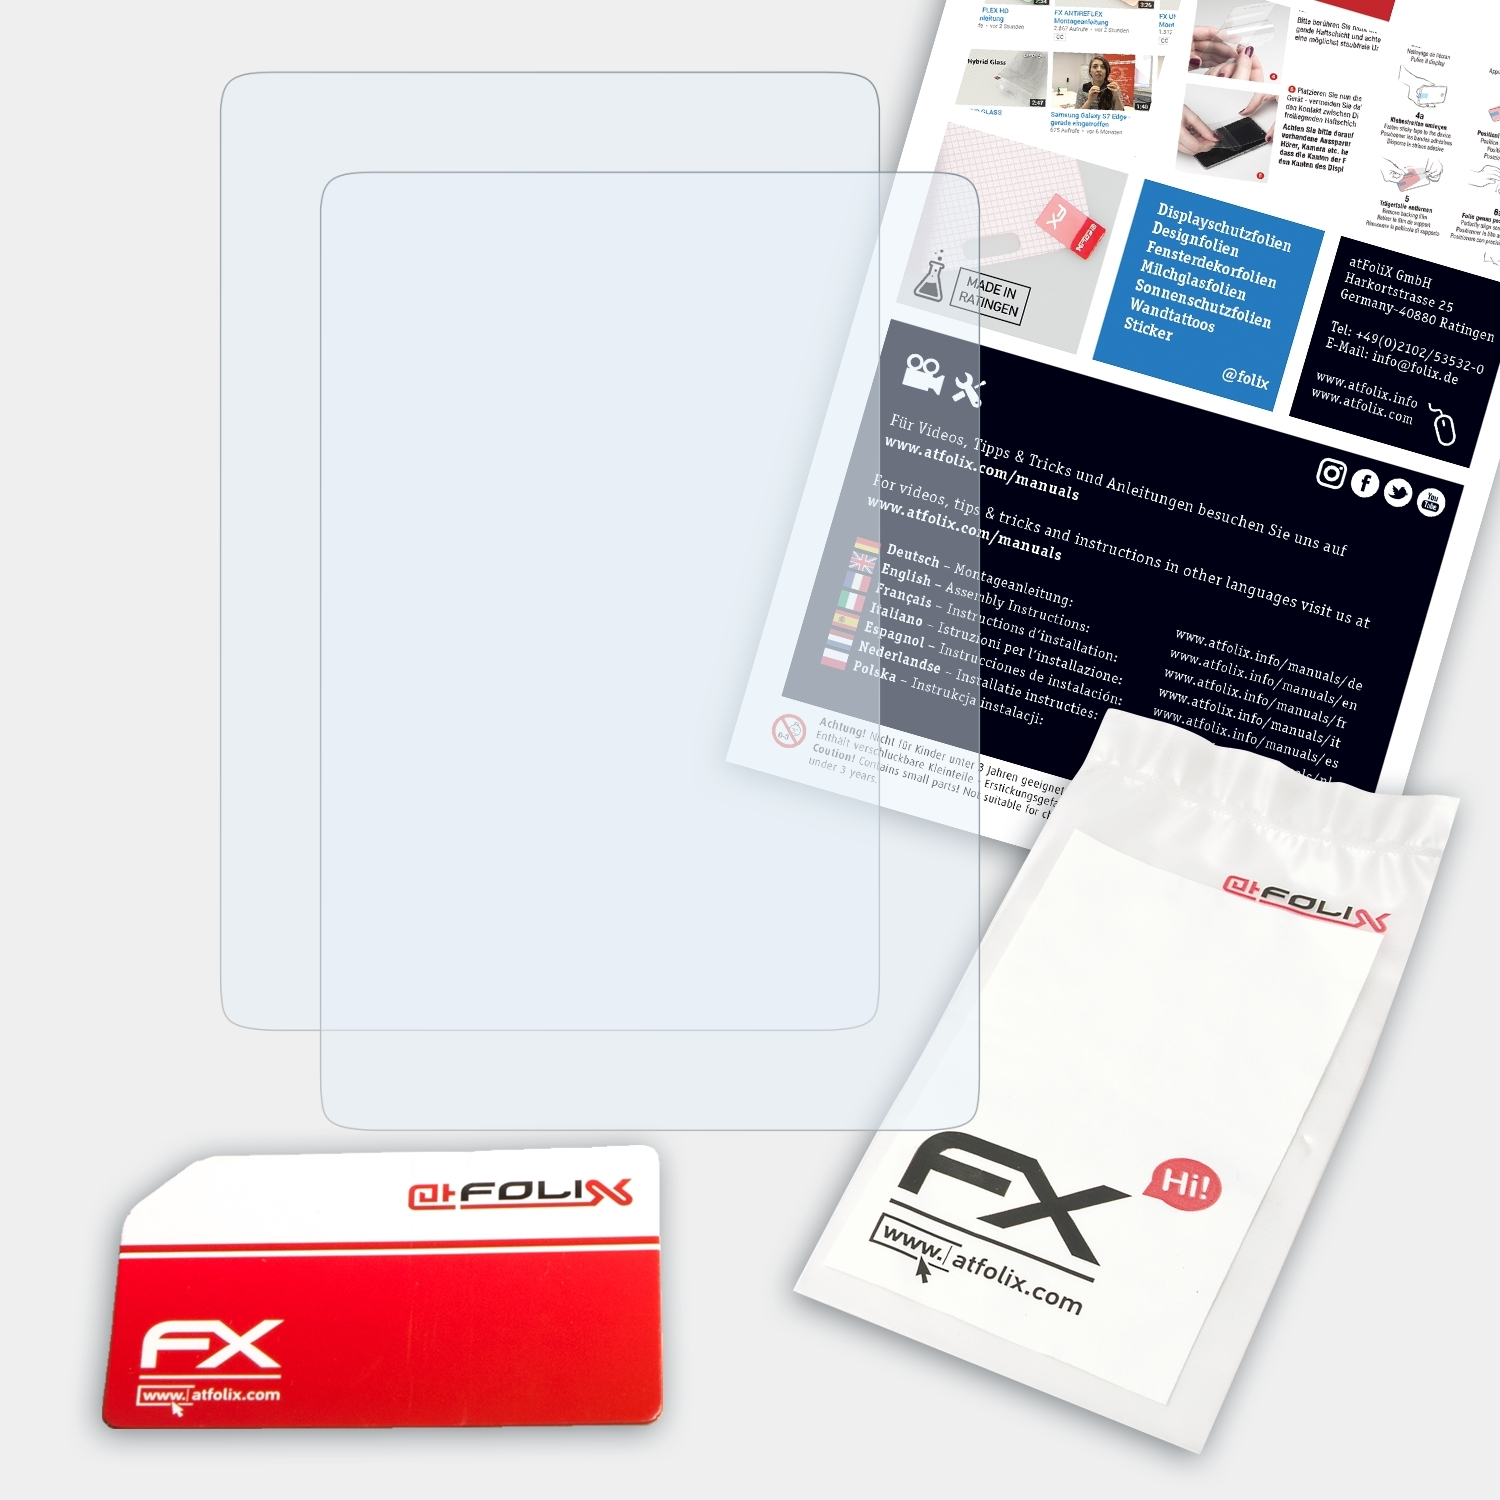 ATFOLIX 2x FX-Clear Paperwhite Amazon Kindle Displayschutz(für (2018))